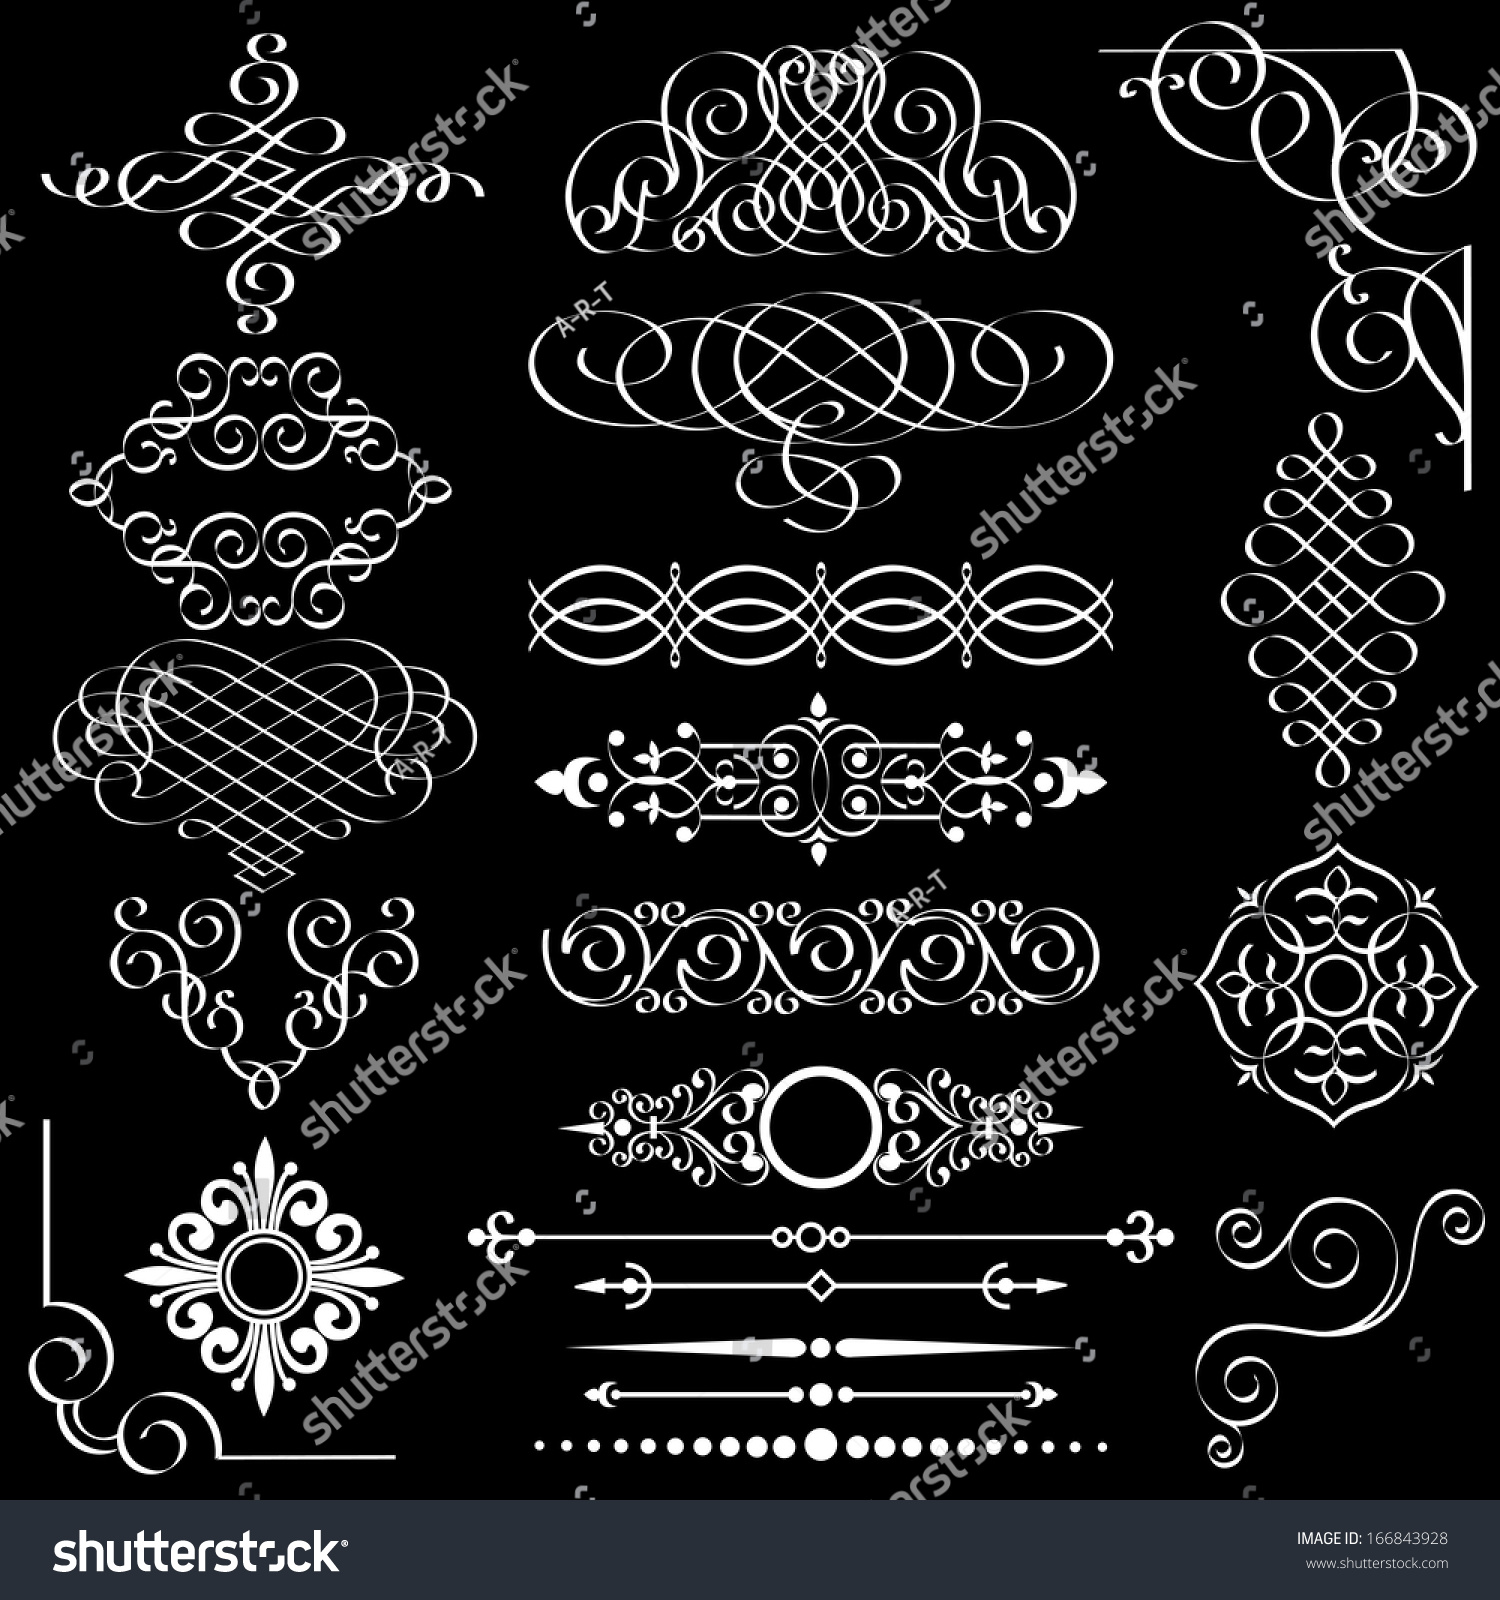 Vector Set Of Vintage Design Elements - 166843928 : Shutterstock